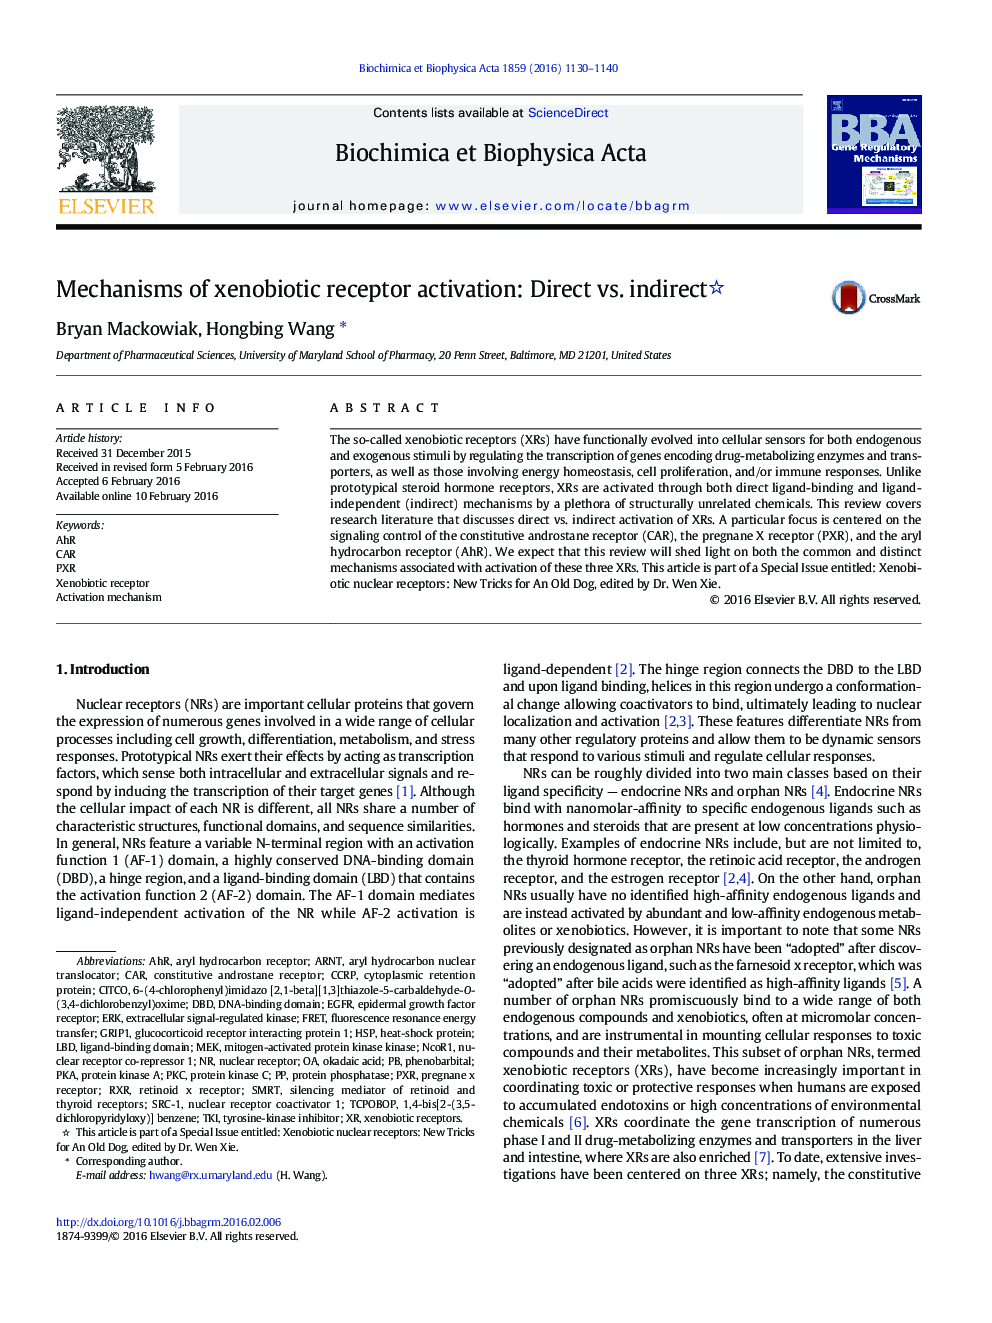 Mechanisms of xenobiotic receptor activation: Direct vs. indirect 